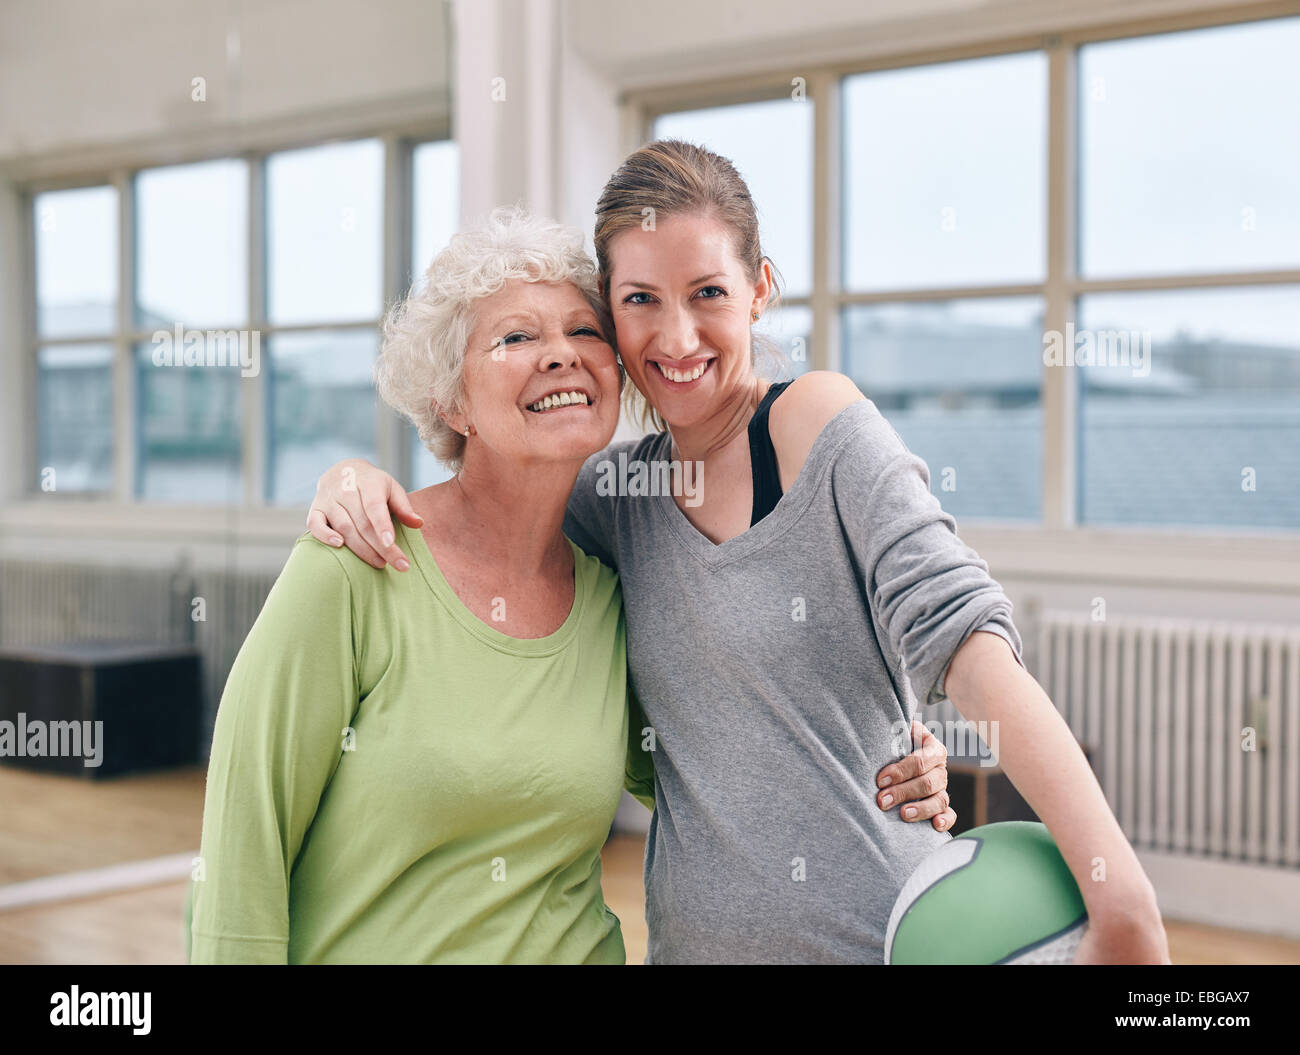 Porträt der fröhliche ältere Frau mit ihrem persönlichen Trainer im Fitness-Studio. Zwei Frauen stehen gemeinsam Lächeln in die Kamera im Health club Stockfoto